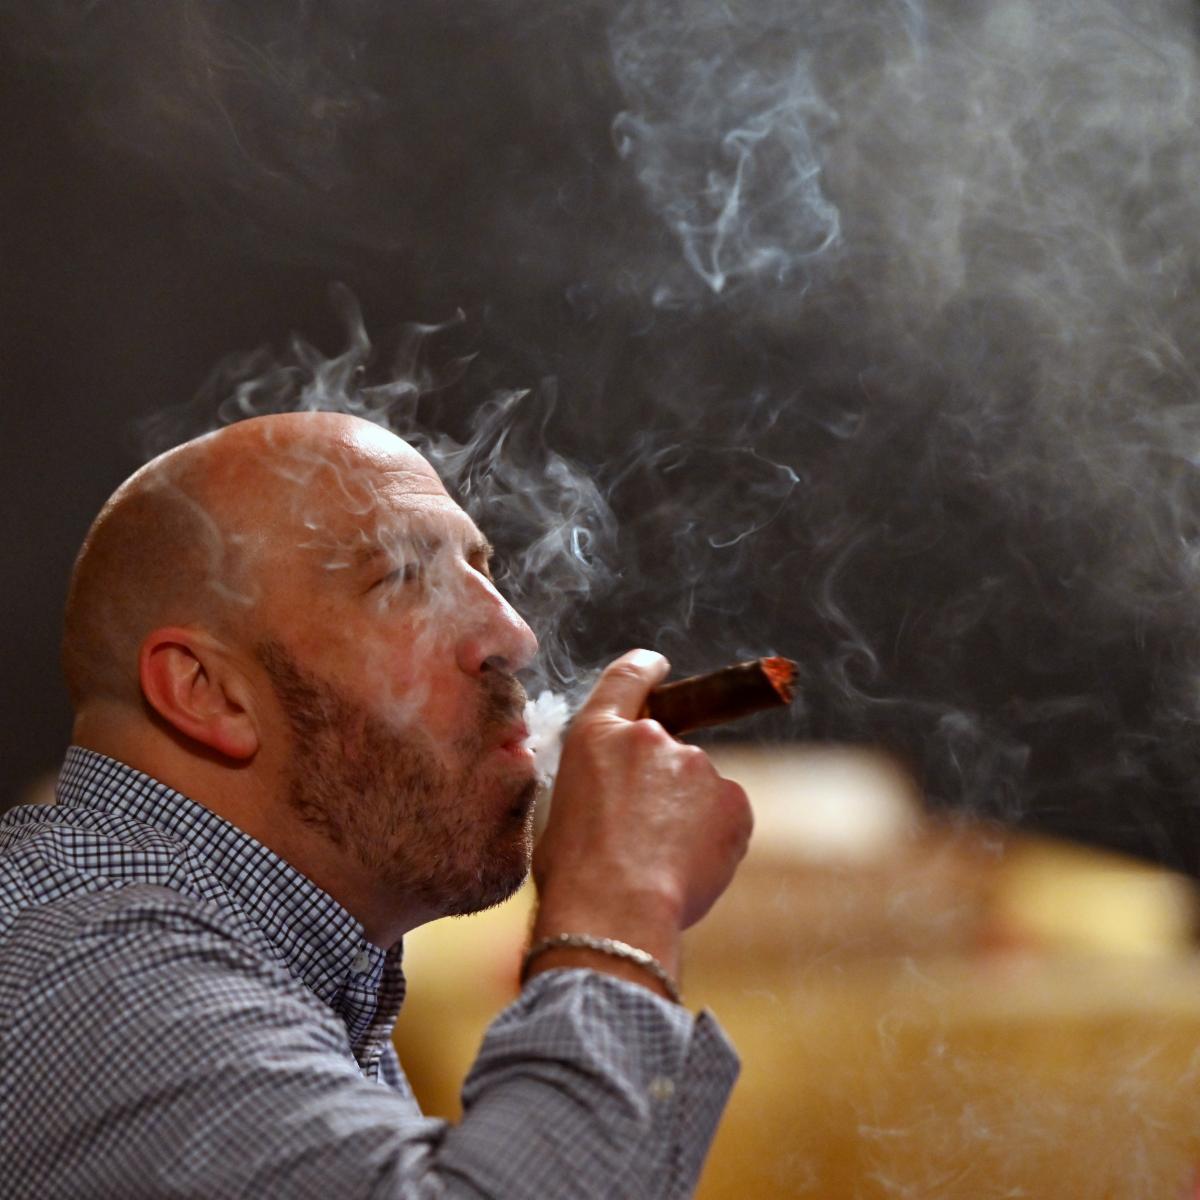 Man smoking cigar